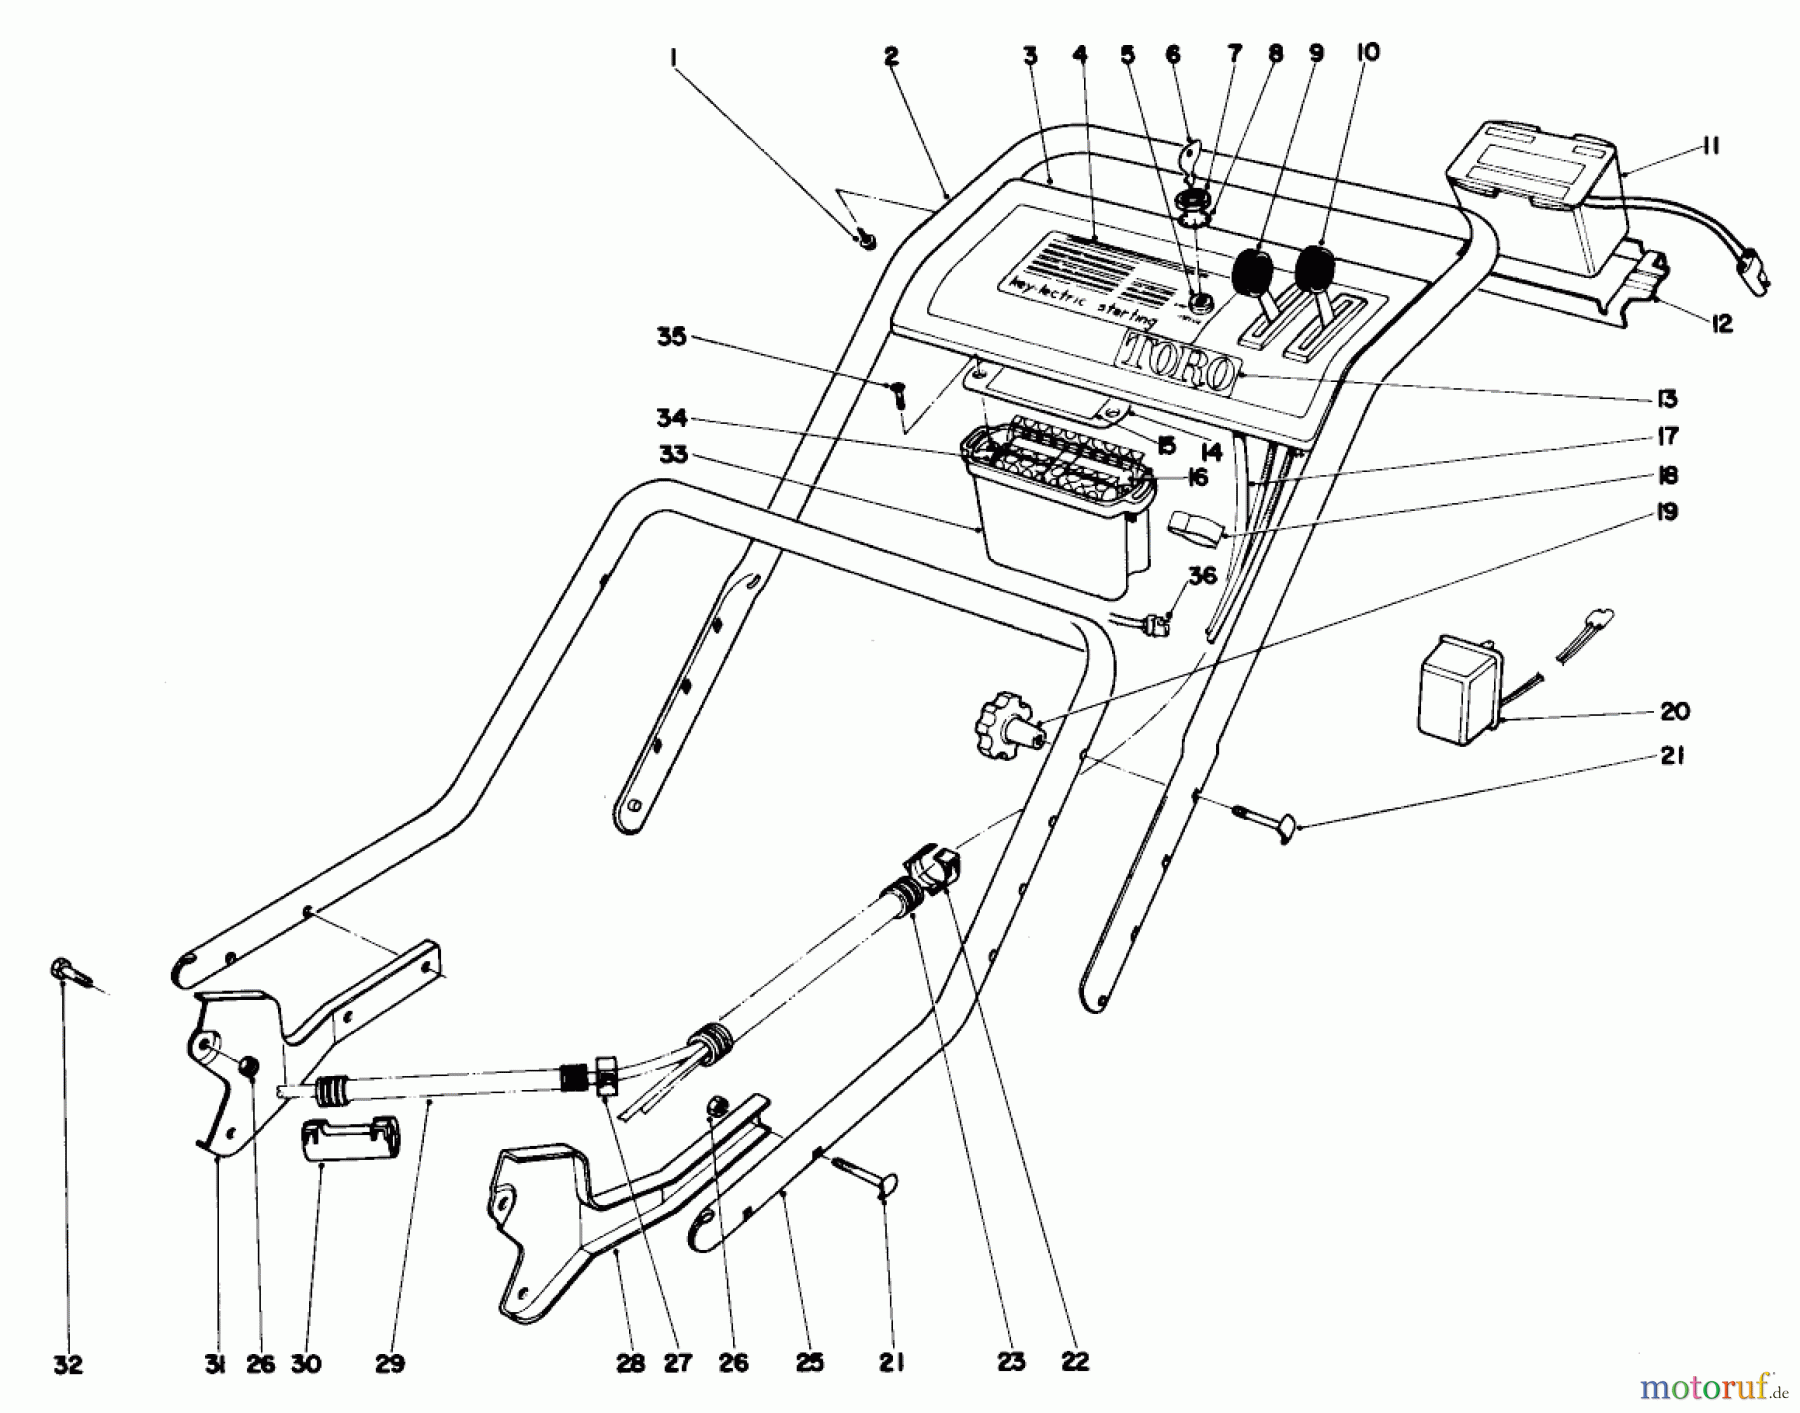  Toro Neu Mowers, Walk-Behind Seite 1 20660 - Toro Lawnmower, 1974 (4000001-4999999) HANDLE ASSEMBLY-MODEL NO. 20660